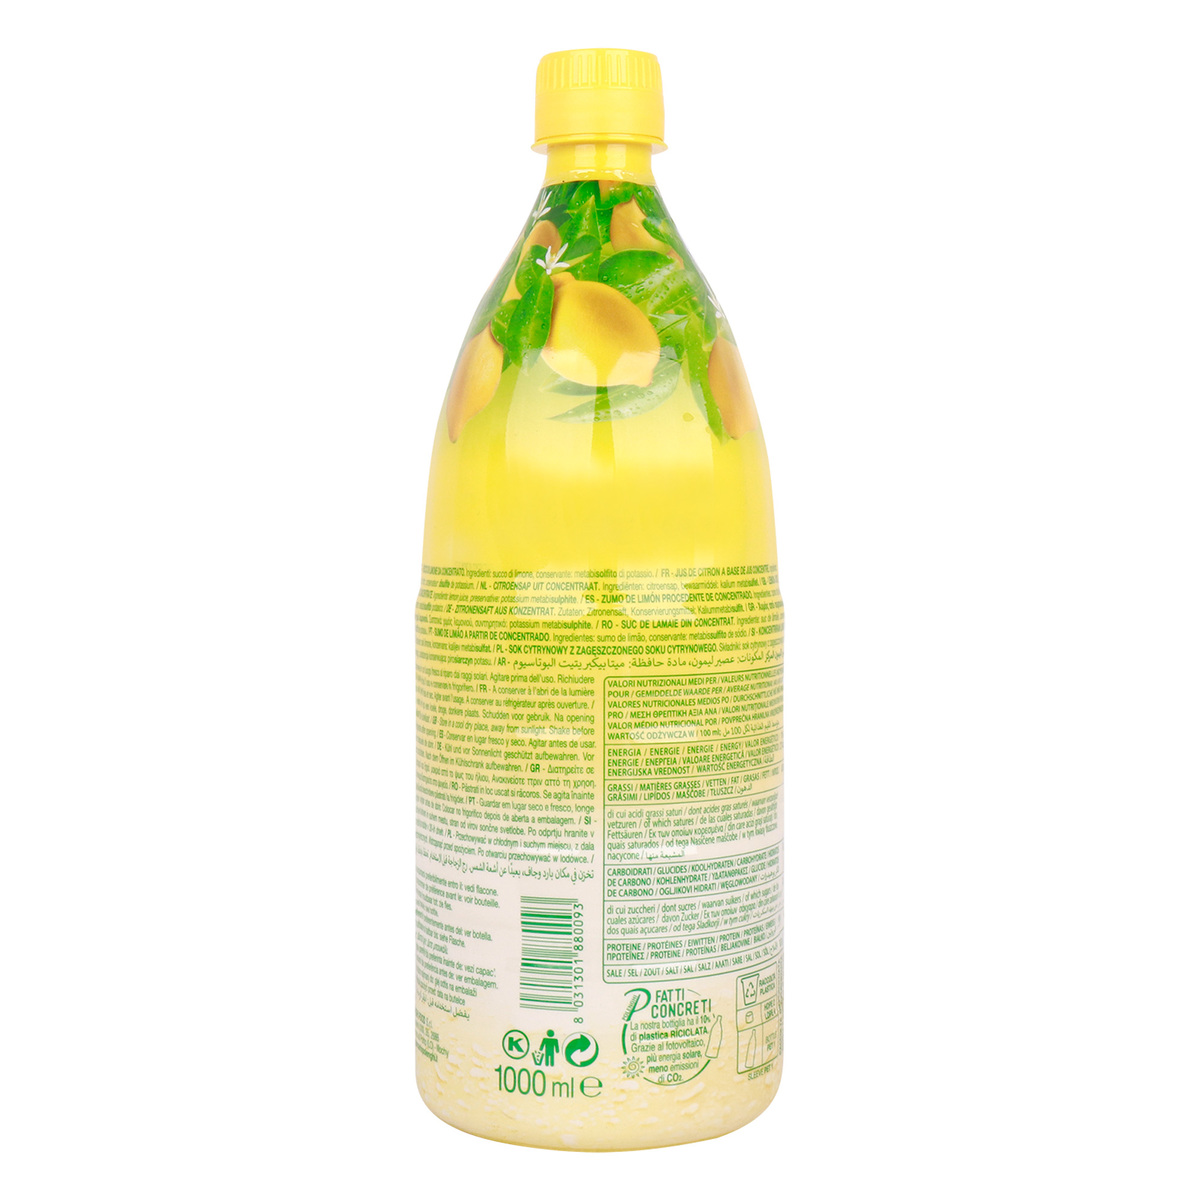 Polenghi Lemon Juice 1Litre